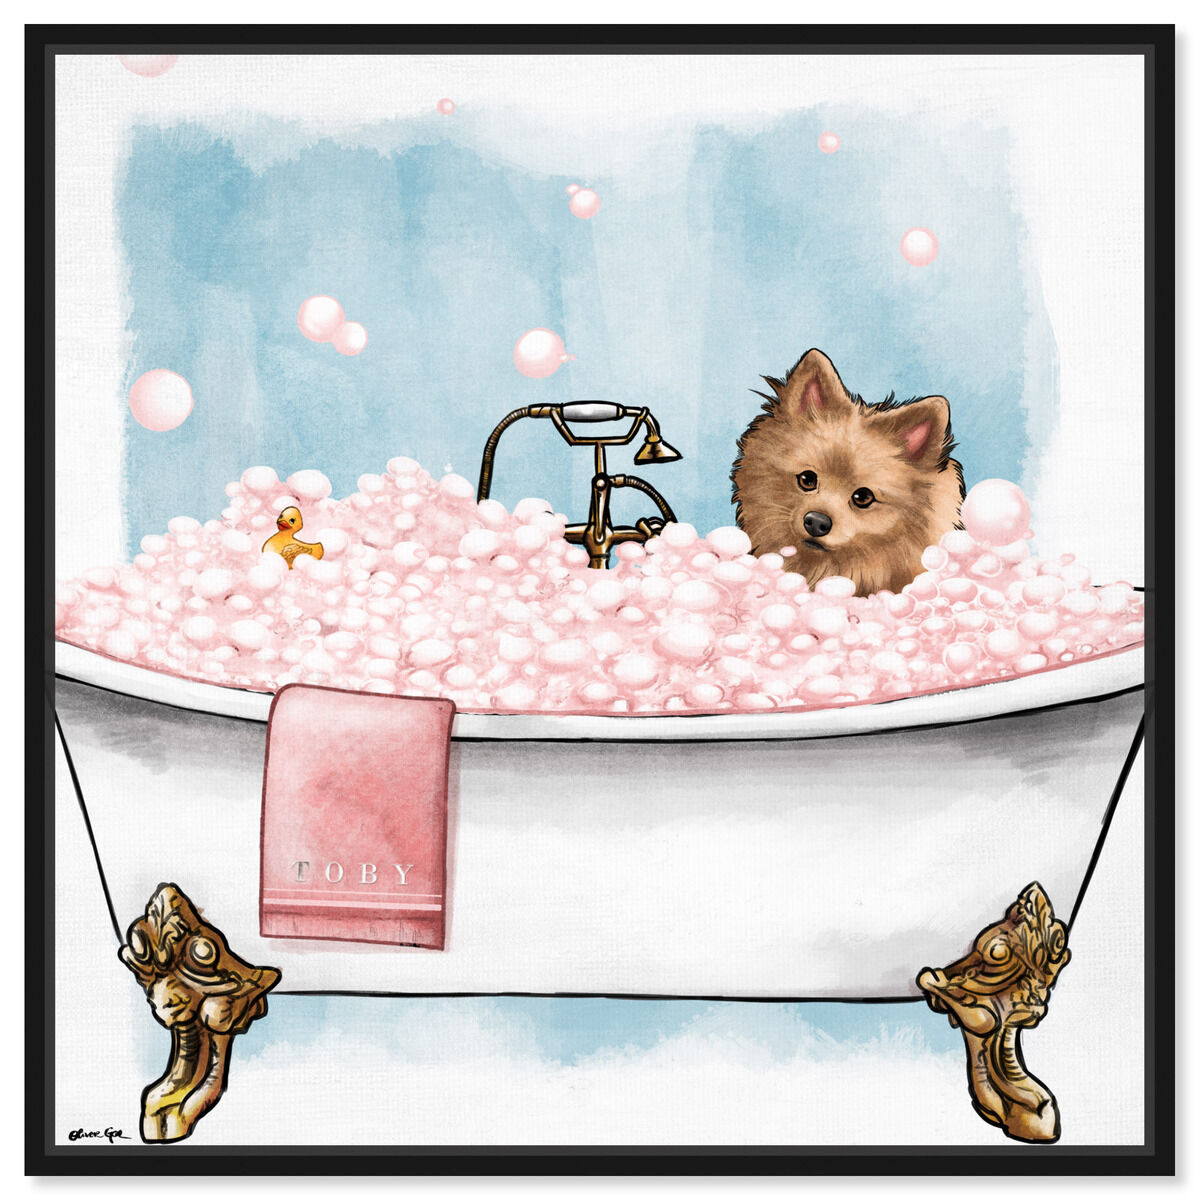 Pet in the tub - Custom Pet Portrait